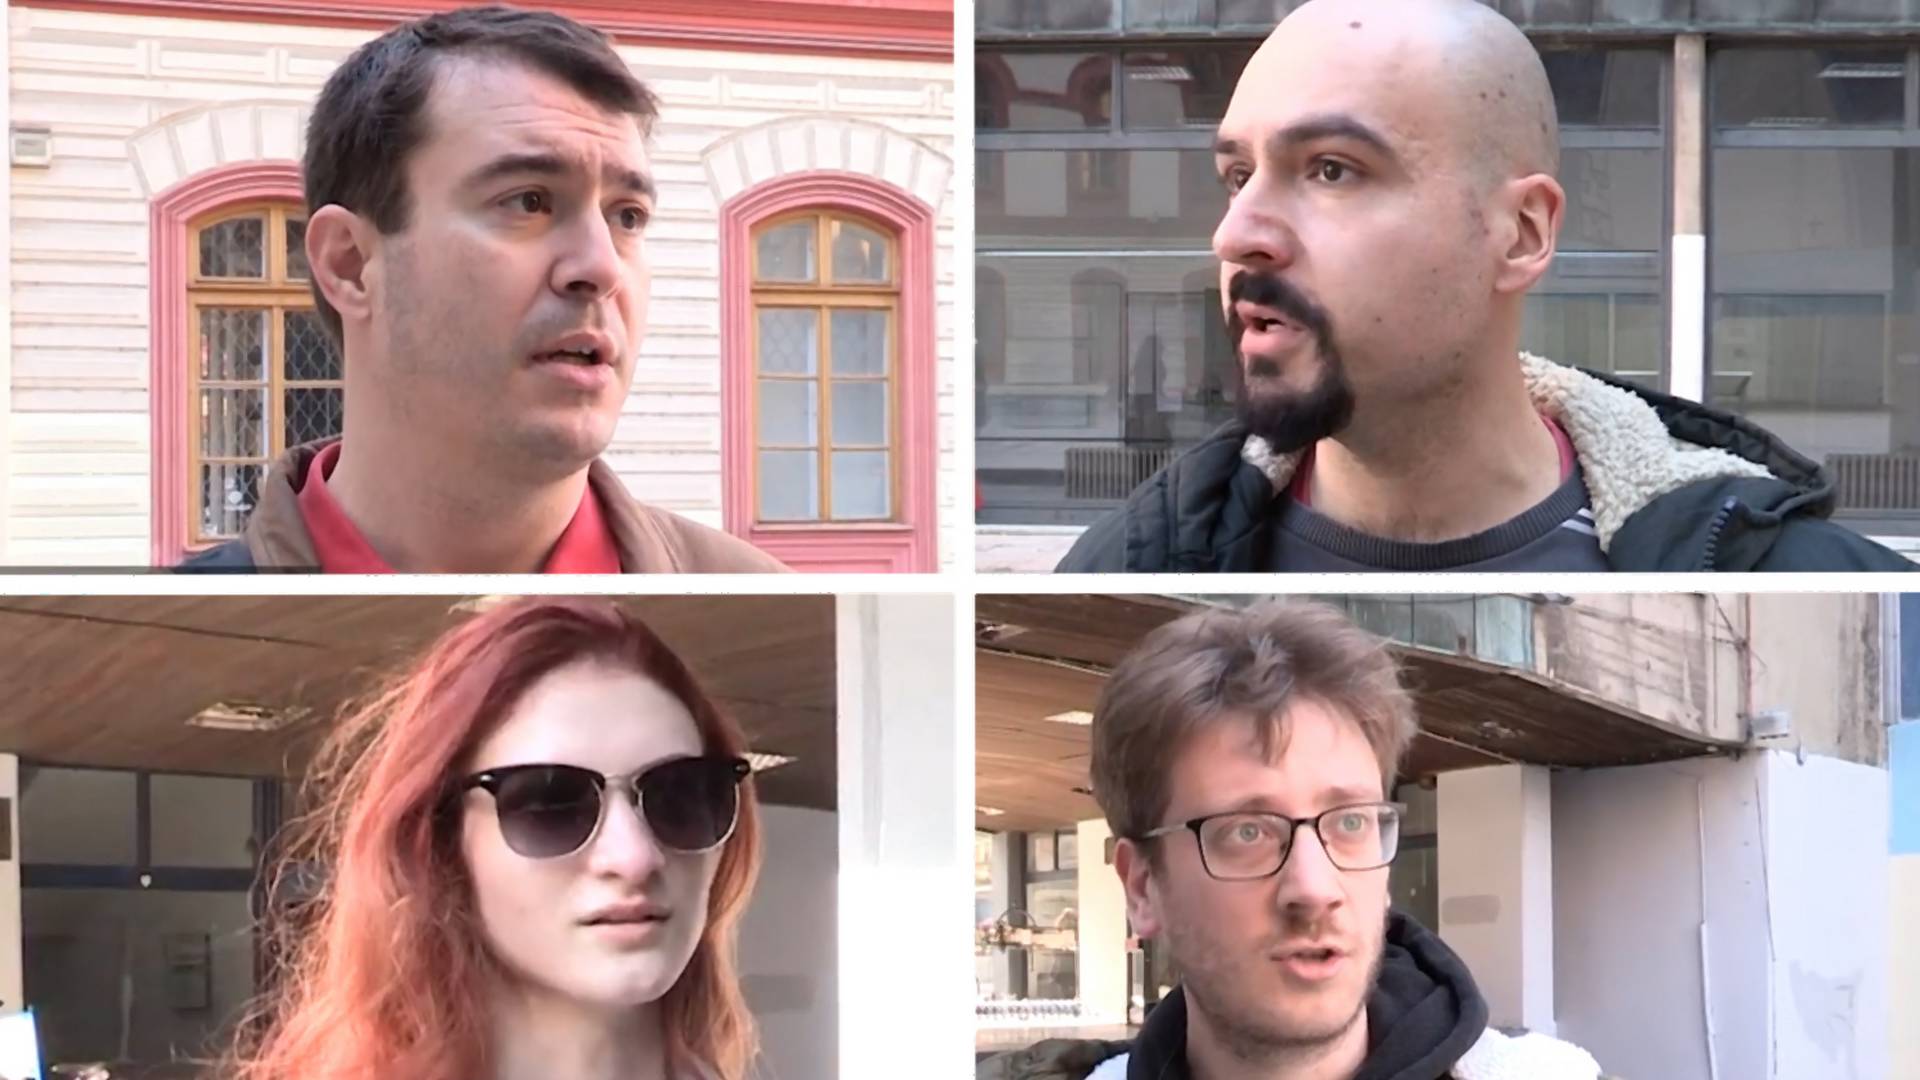 Pitali smo Beograđane šta misle o ratu u Ukrajini i odgovori su skroz diplomatski